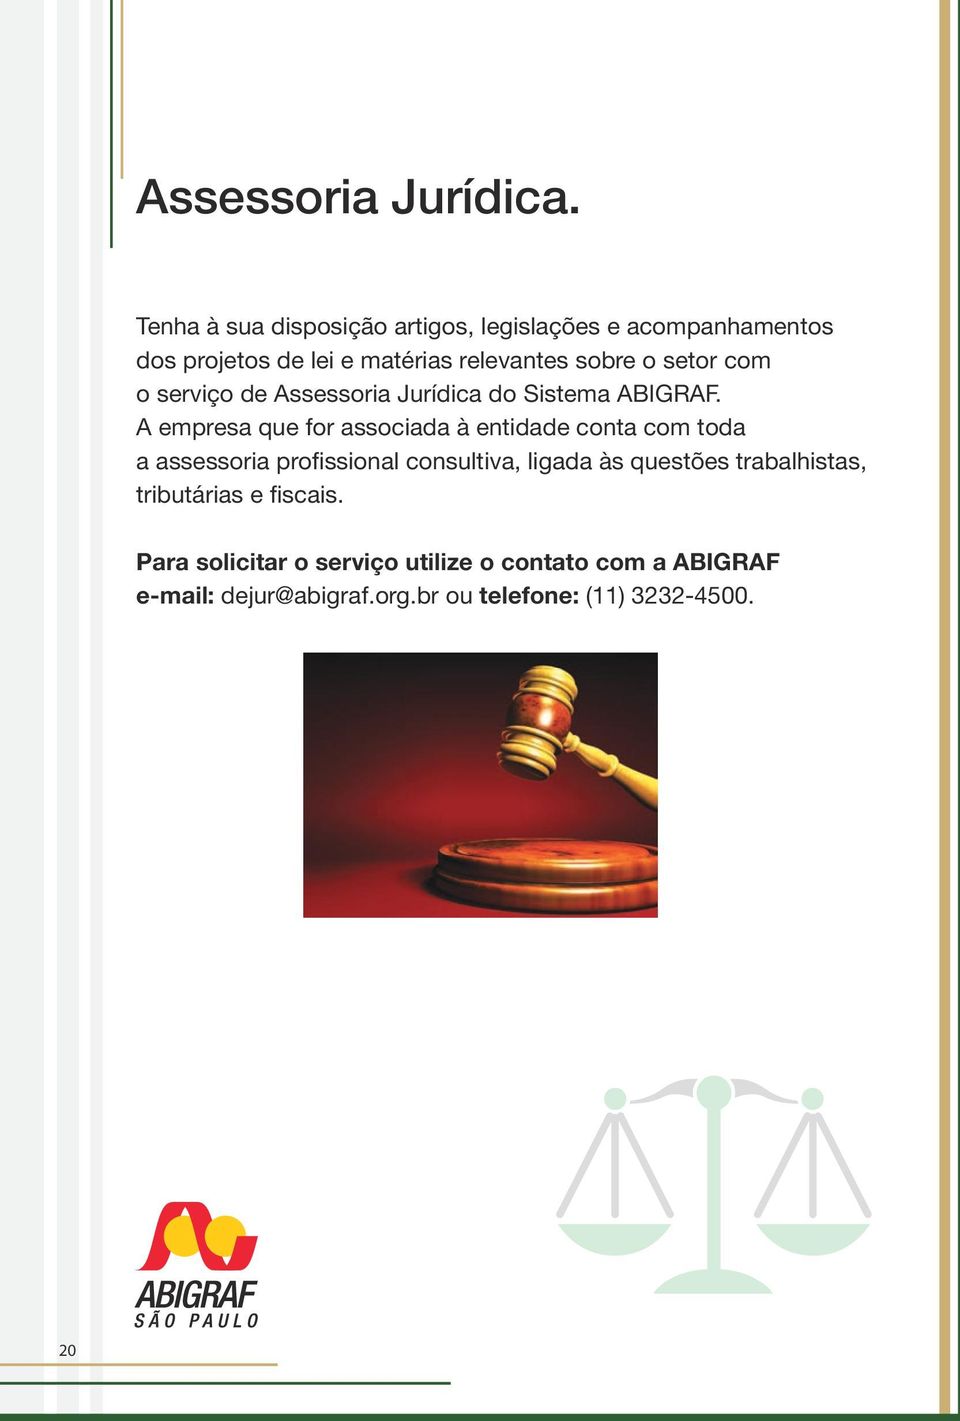 setor com o serviço de Assessoria Jurídica do Sistema ABIGRAF.